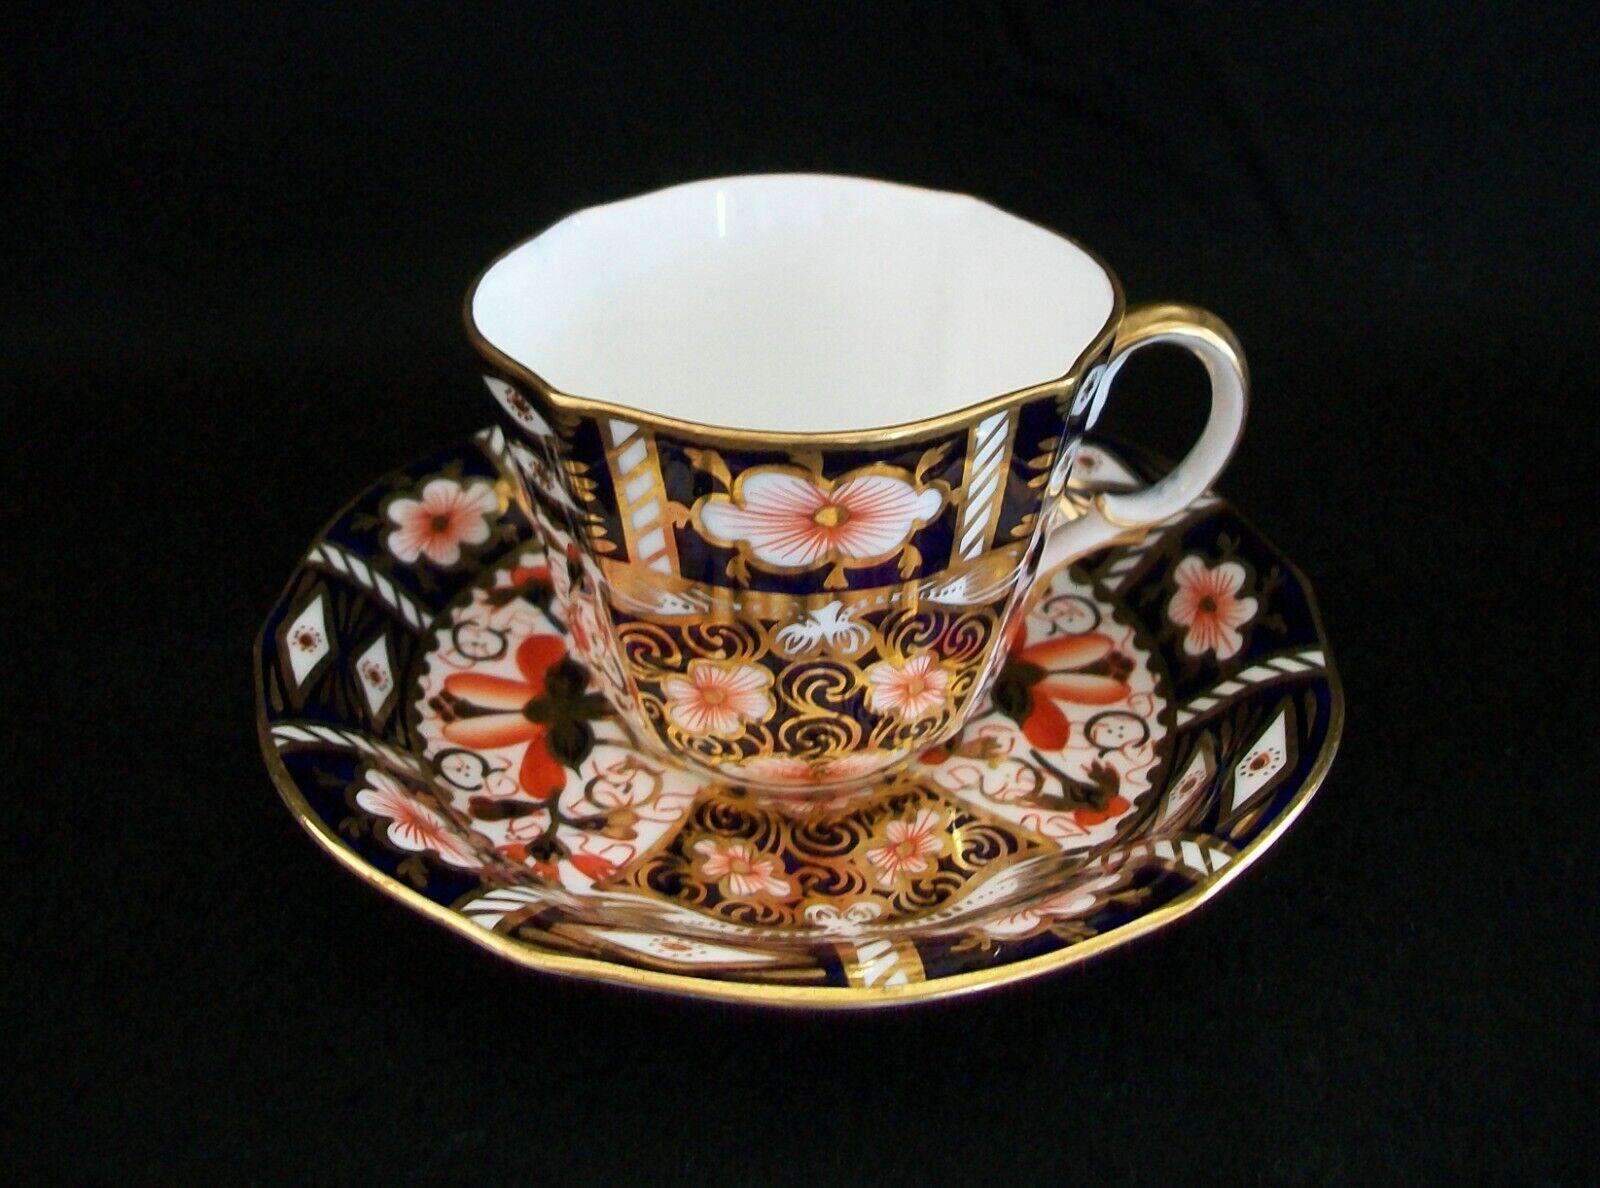 ROYAL CROWN DERBY - Imari Pattern Number 2451 - Tasse à thé ancienne en porcelaine d'os aux côtés cannelés (vers 1912) et une soucoupe ancienne (vers 1916) - décor doré élaboré sur un motif oriental peint à la main en bleu et orange - chacune signée